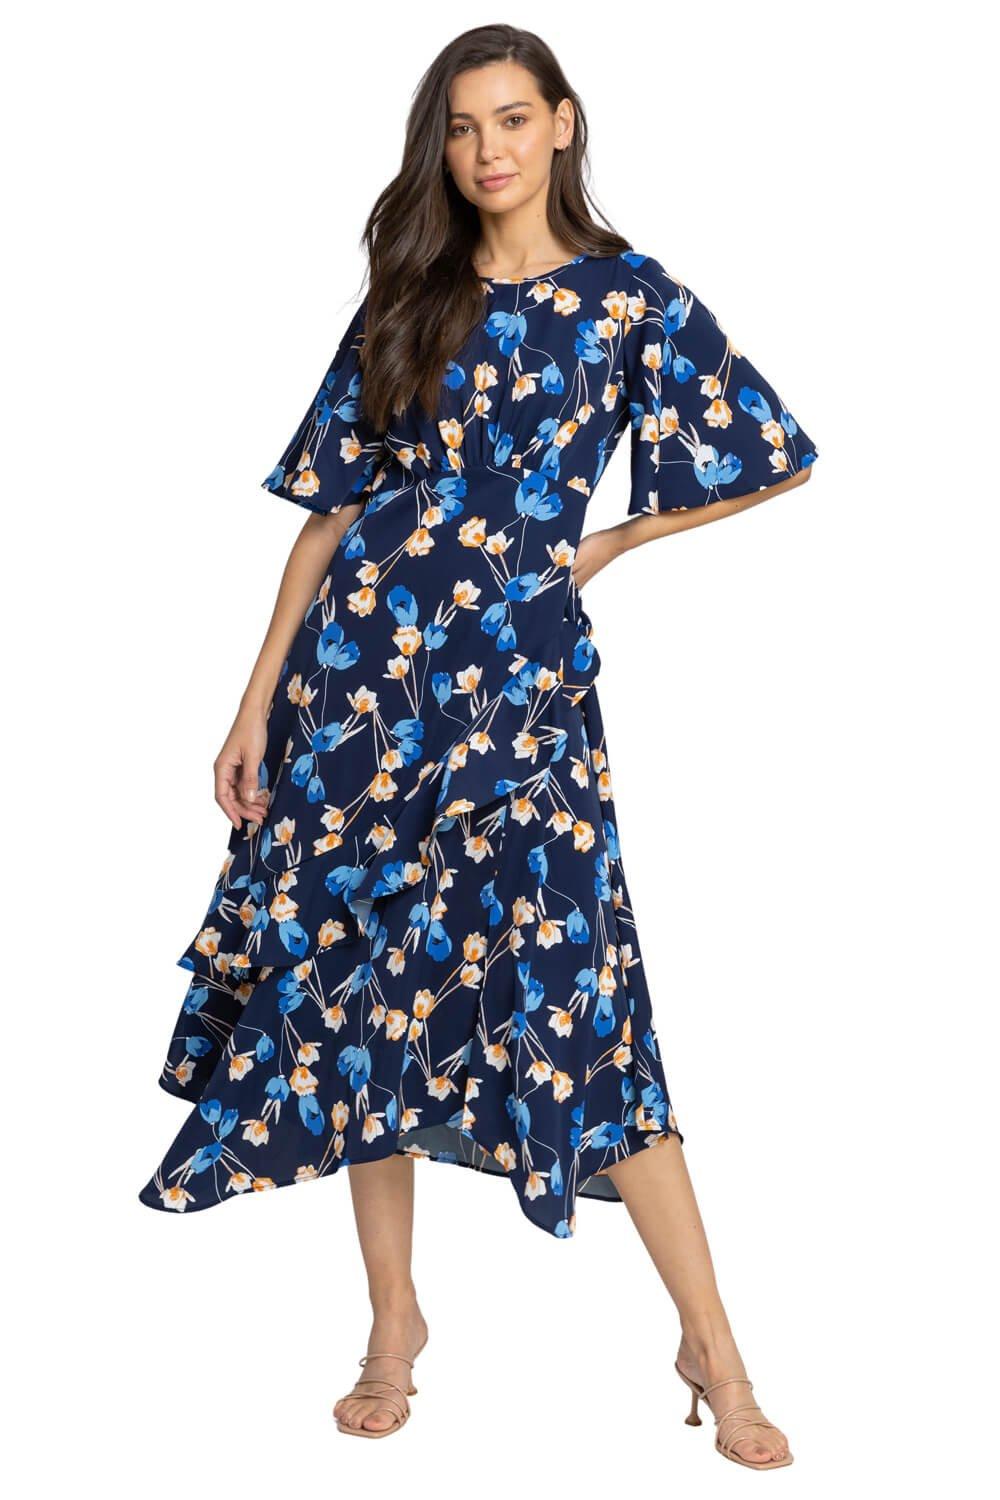 Шифоновое платье-миди с цветочным принтом Roman, синий платье миди с цветами 42 44 размер